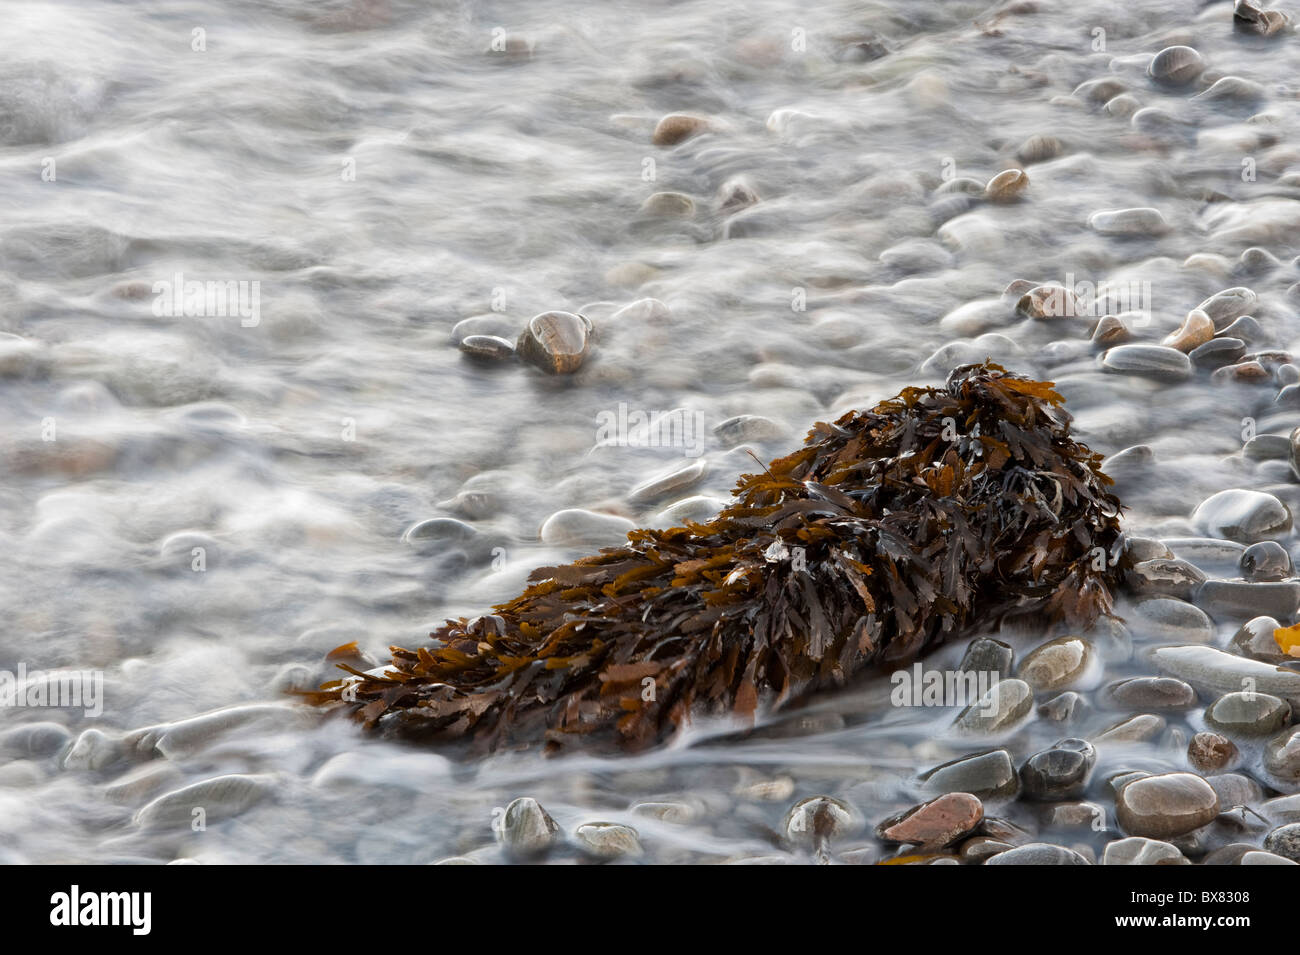 Arte bella immagini create da una lunga esposizione delle onde sulla ghiaia e scogli su una spiaggia scozzese Foto Stock